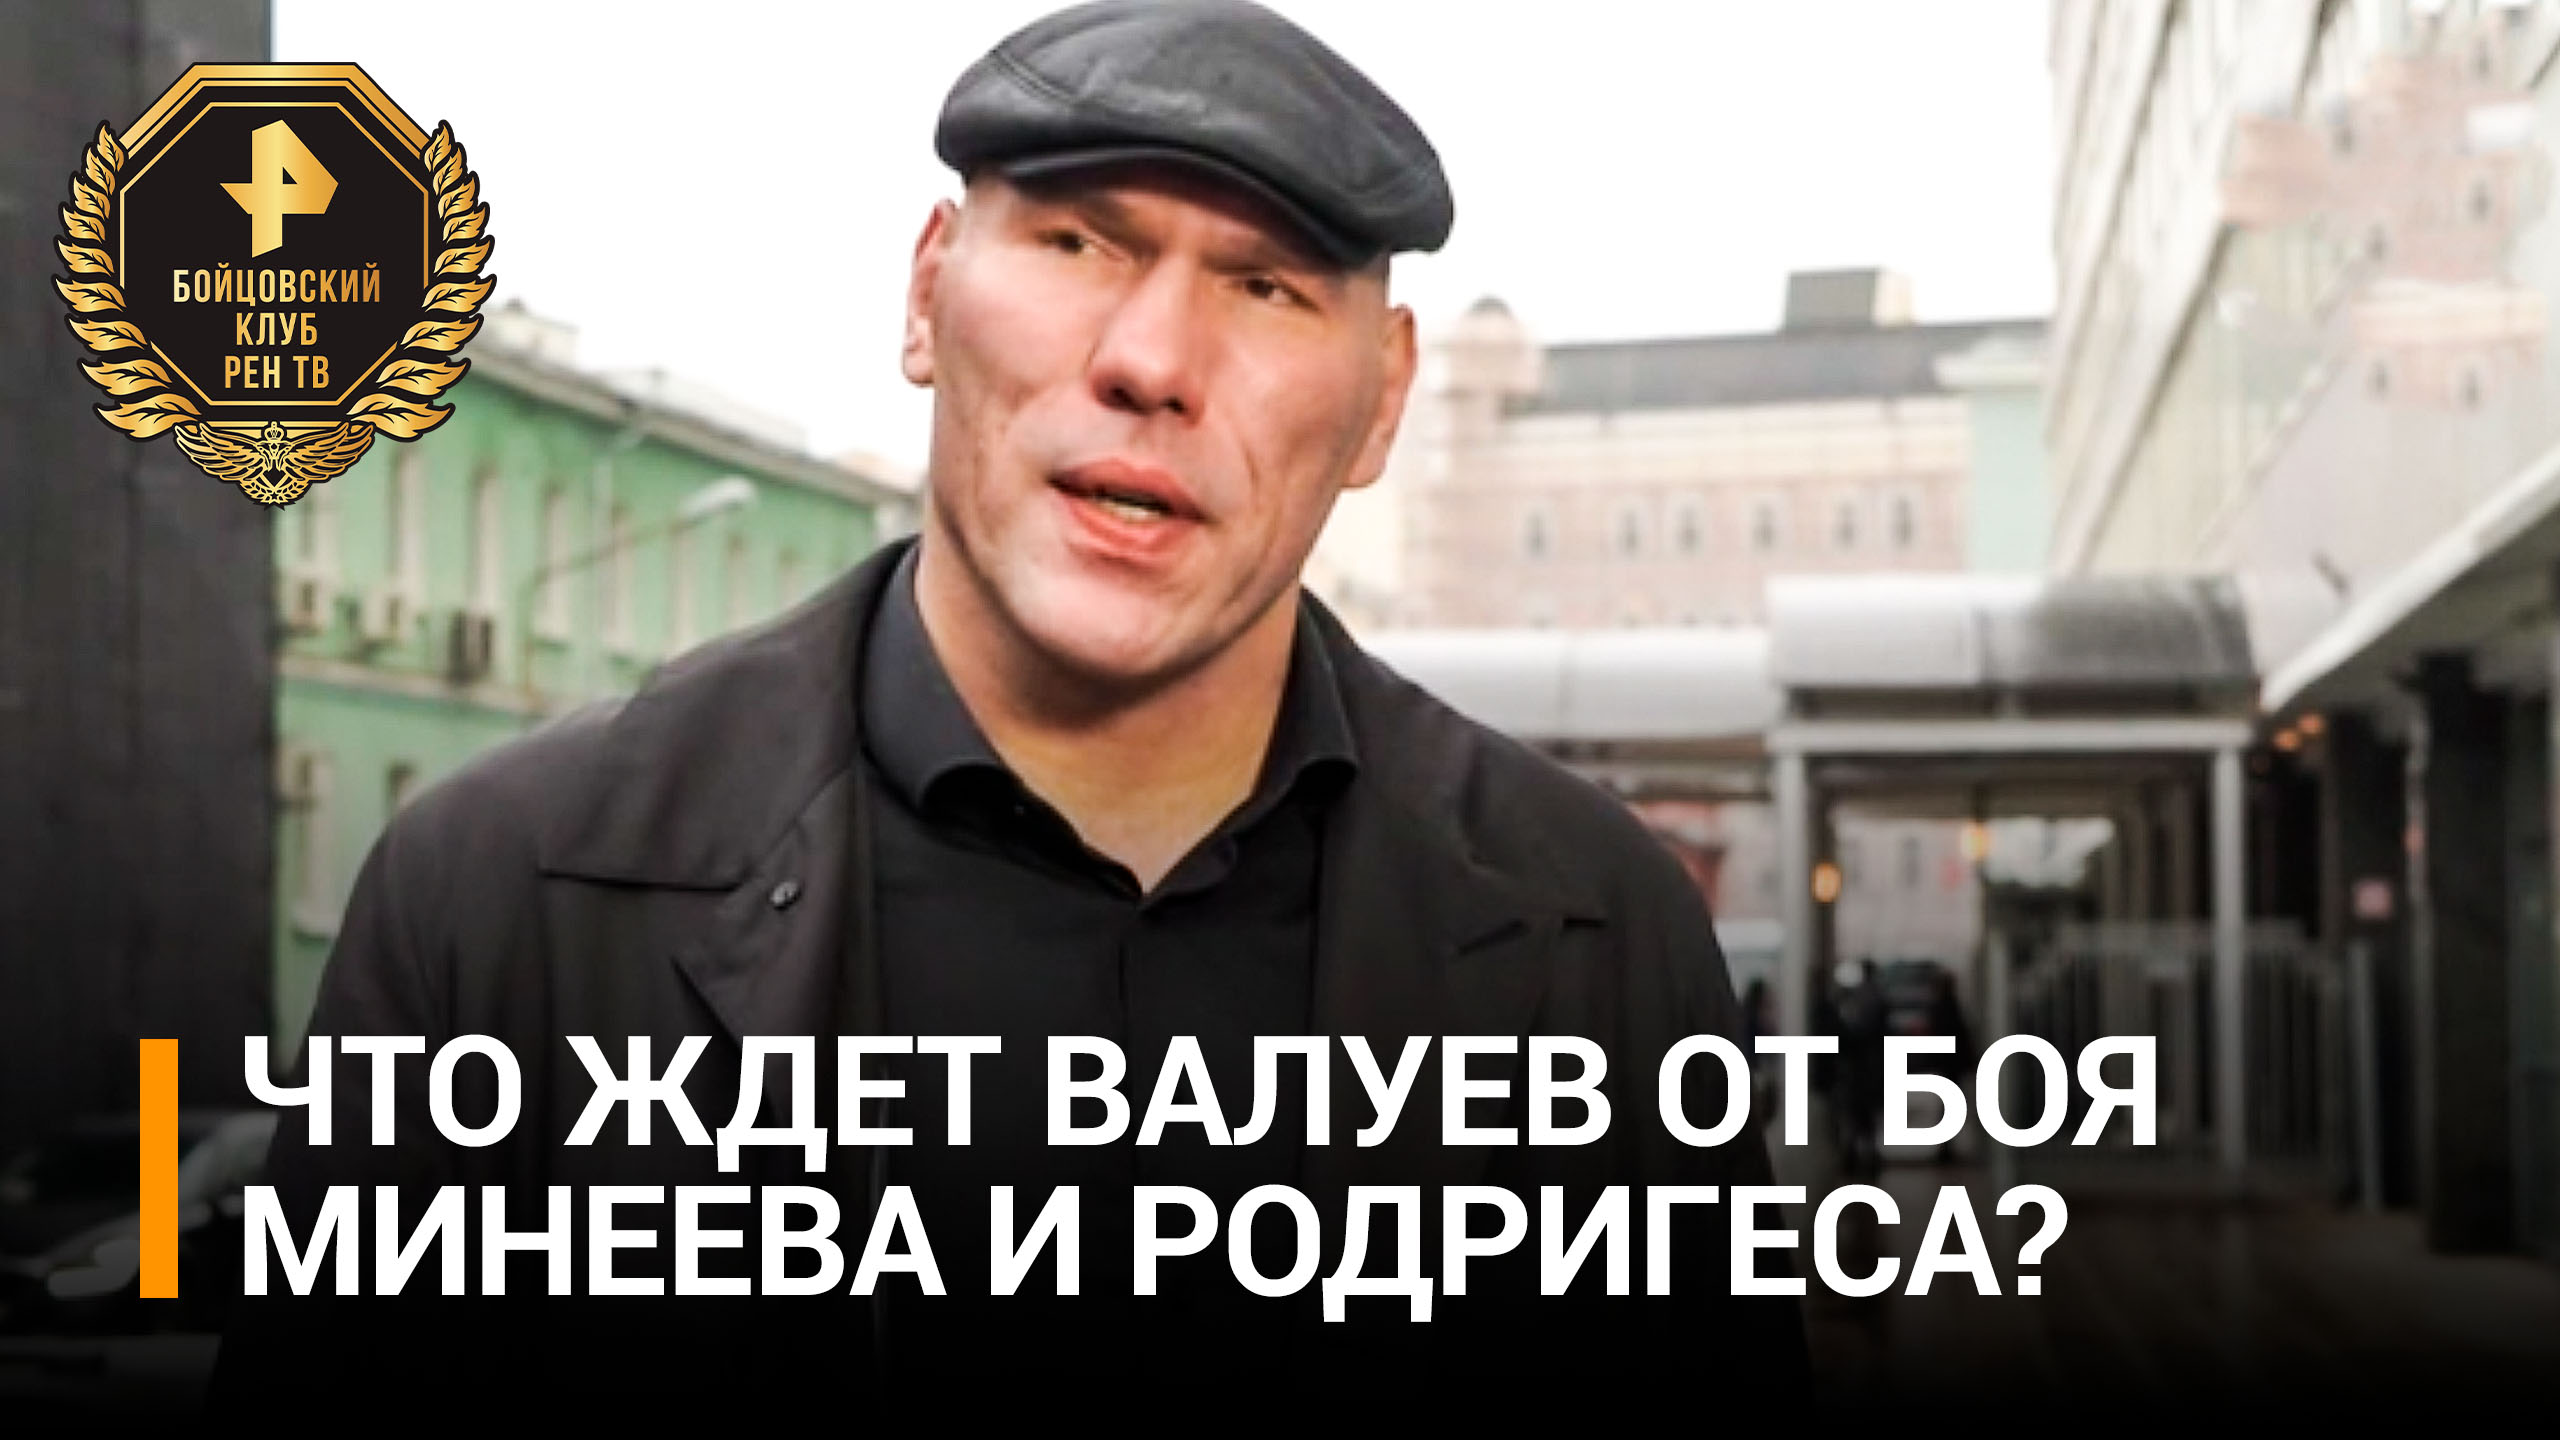 Валуев оценил шансы Минеева в бою против Родригеса / Бойцовский клуб РЕН